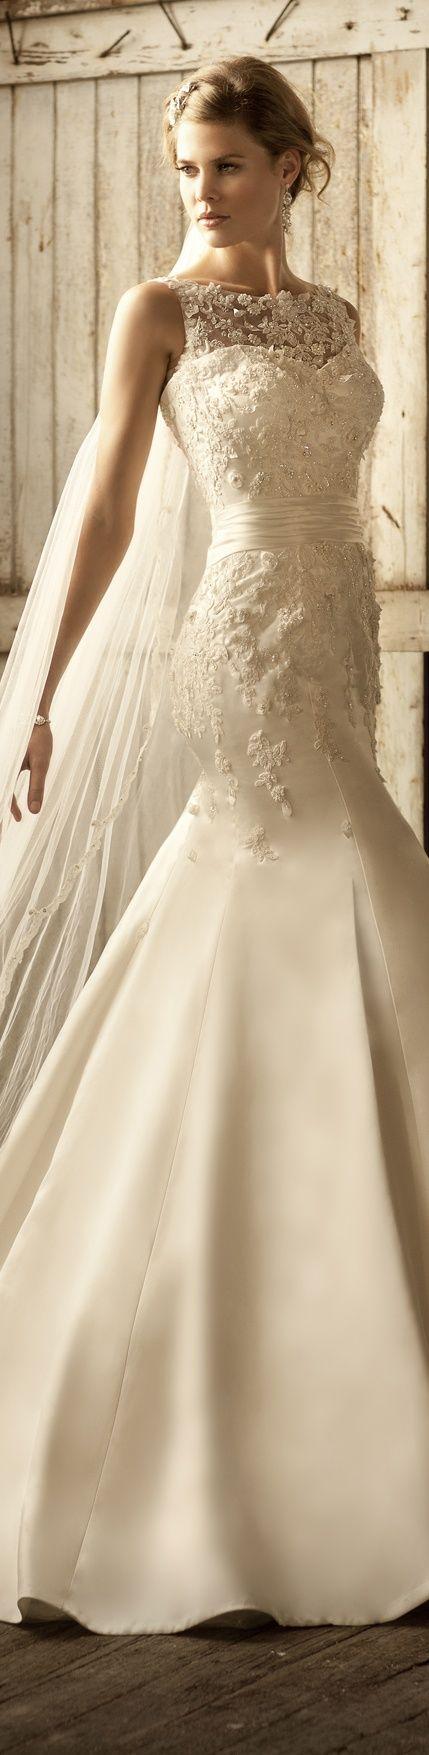 Свадьба - Best Beautiful Wedding Dresses For 2015